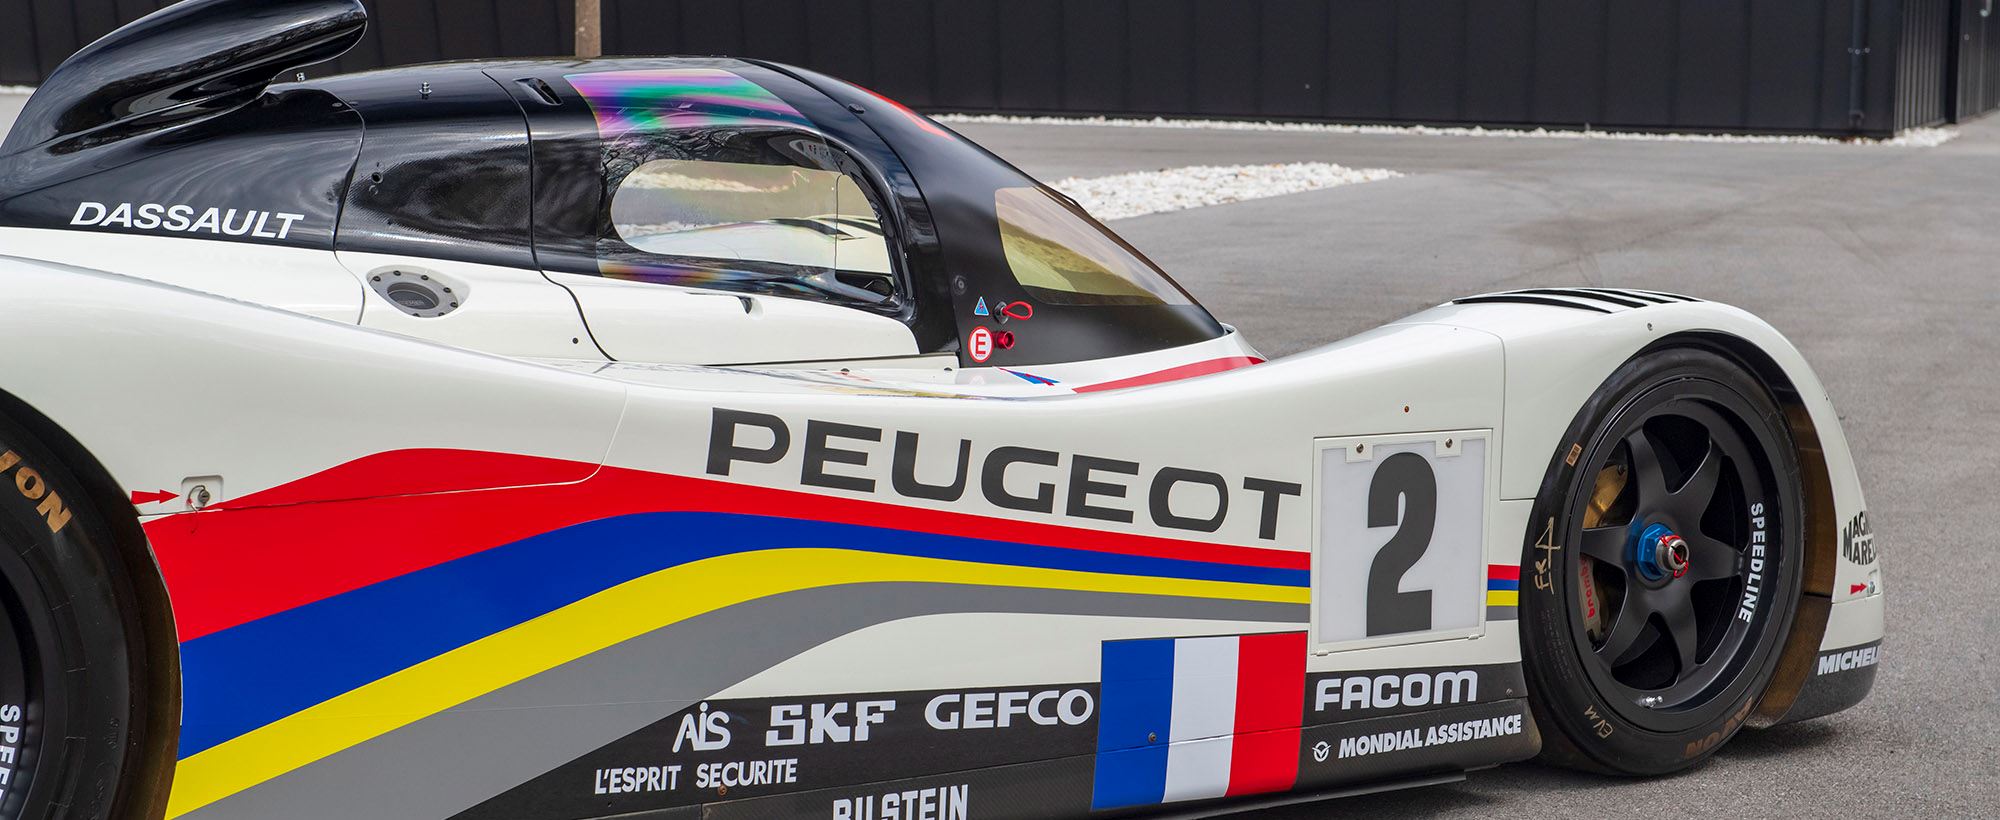 Peugeot 905 081.jpg